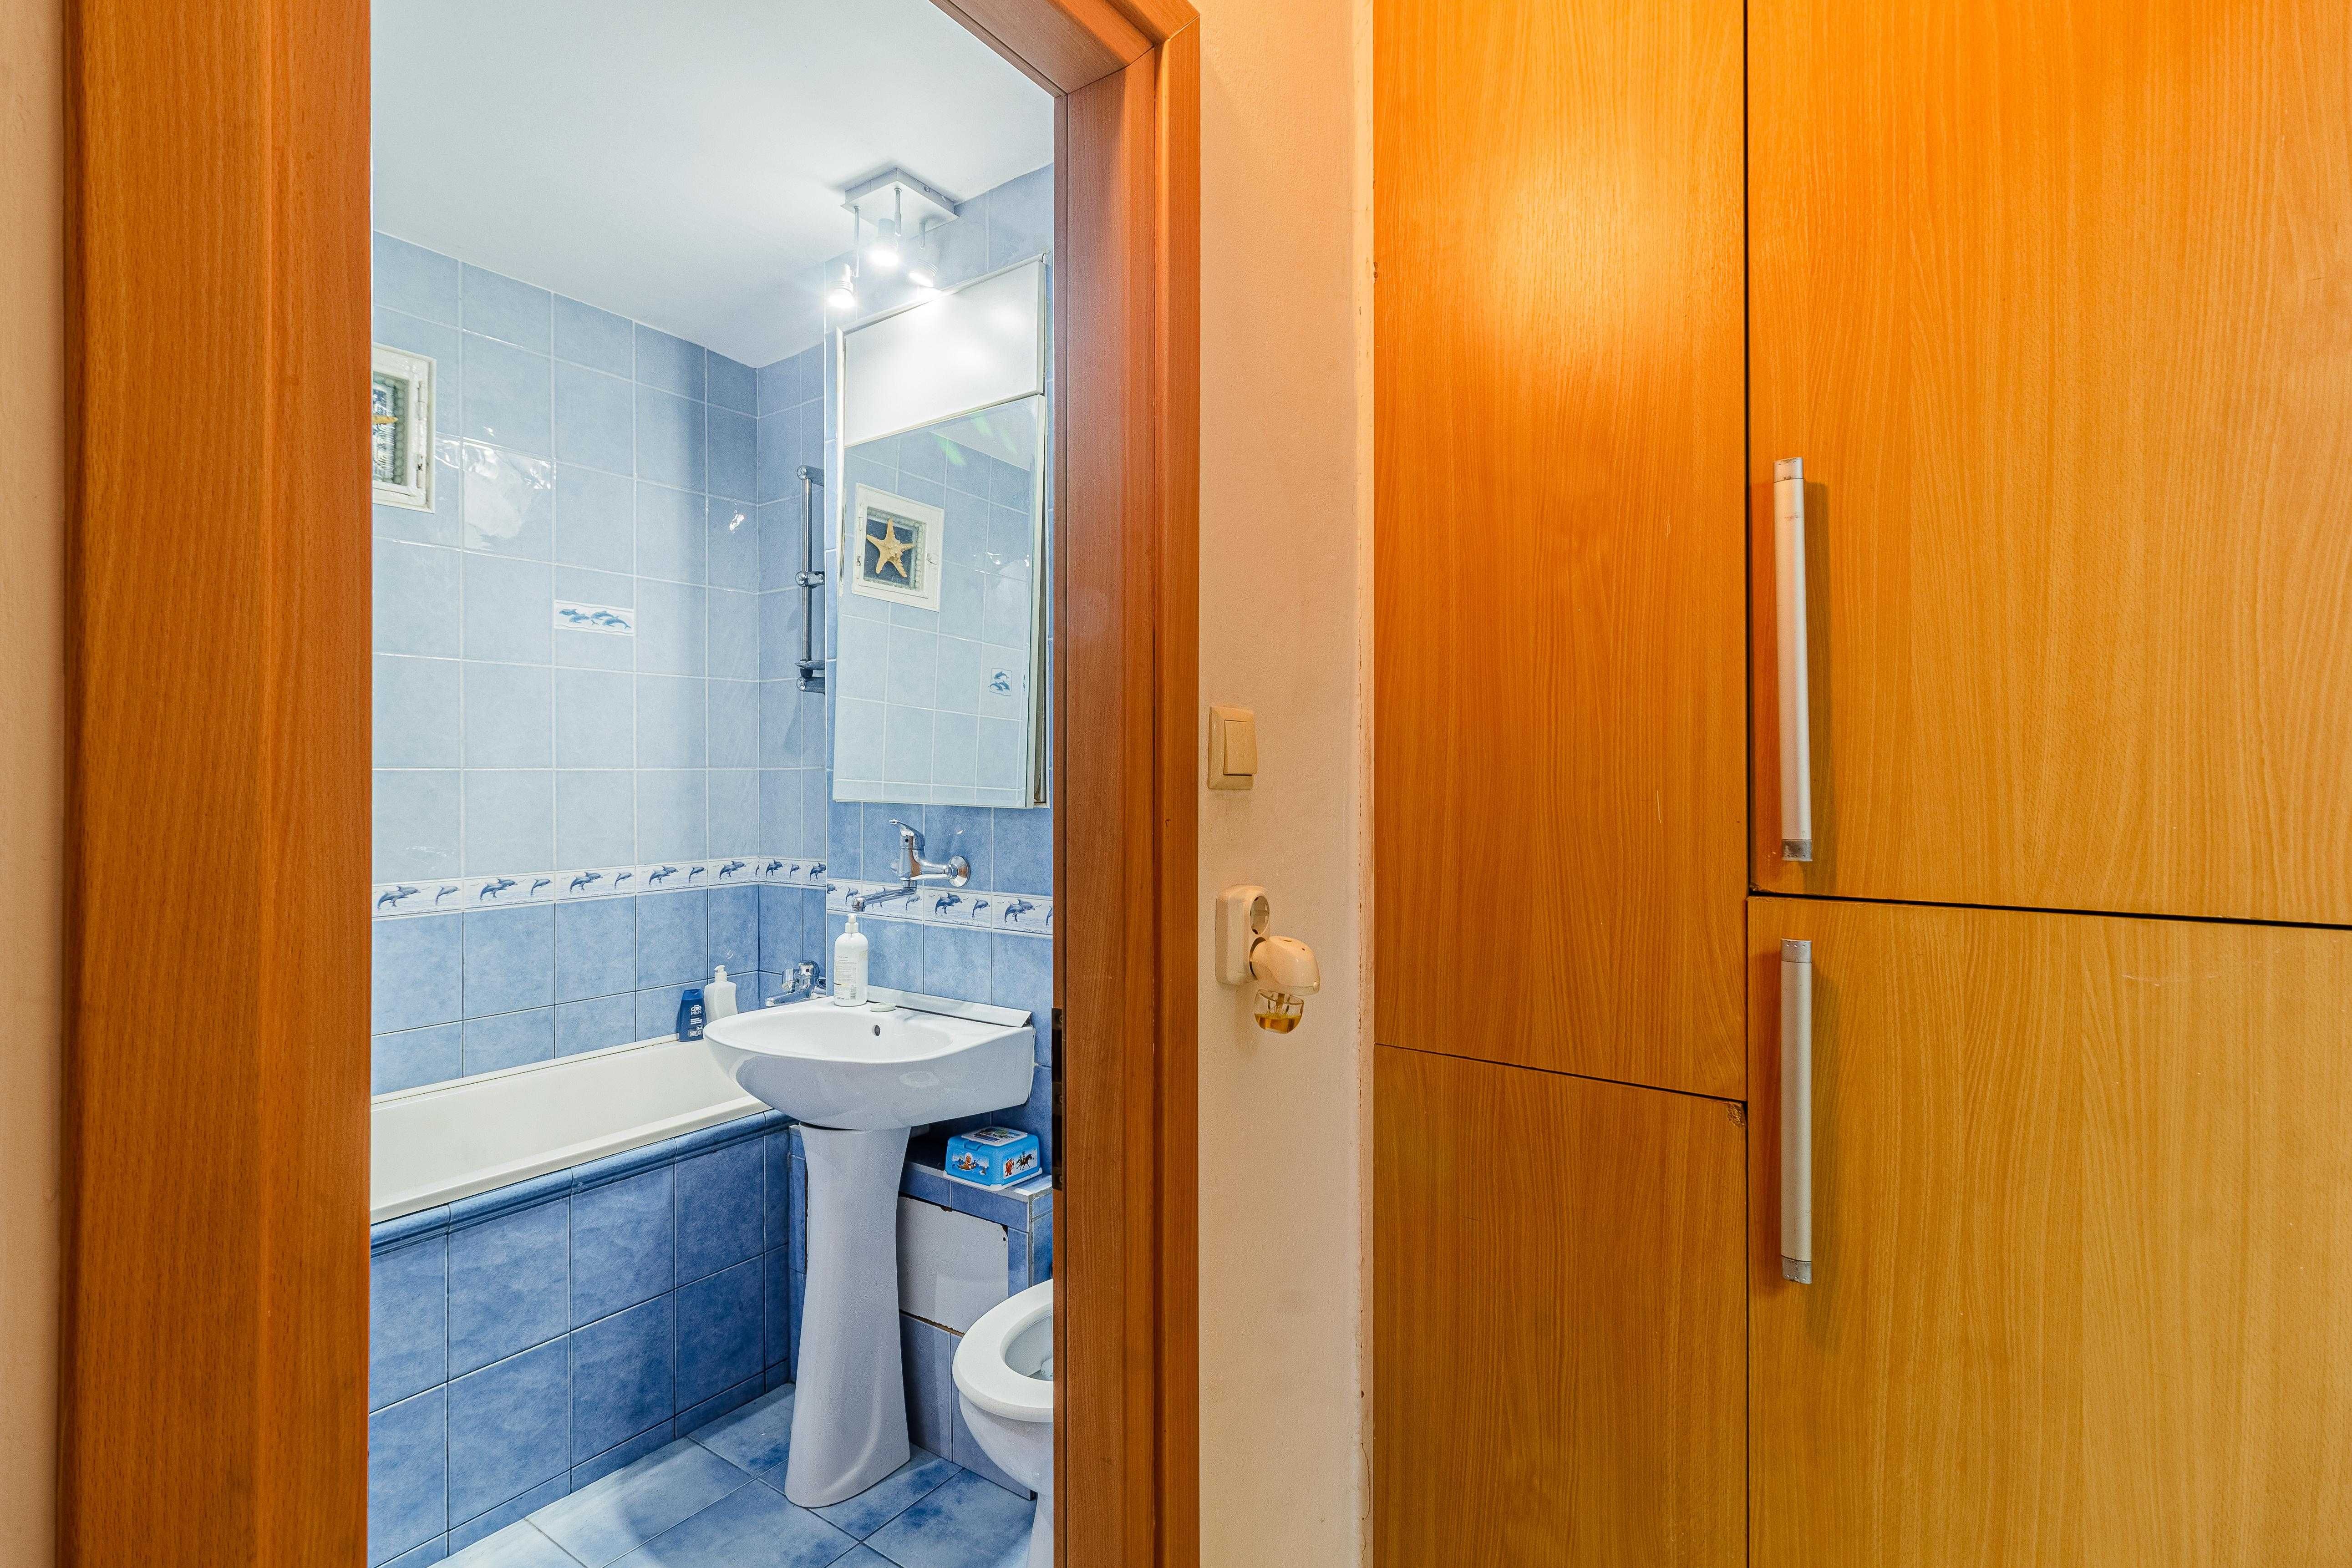 Vânzare Apartament 2+1 Camere - Oradea Nufarul, Liszt Ferenc nr.6